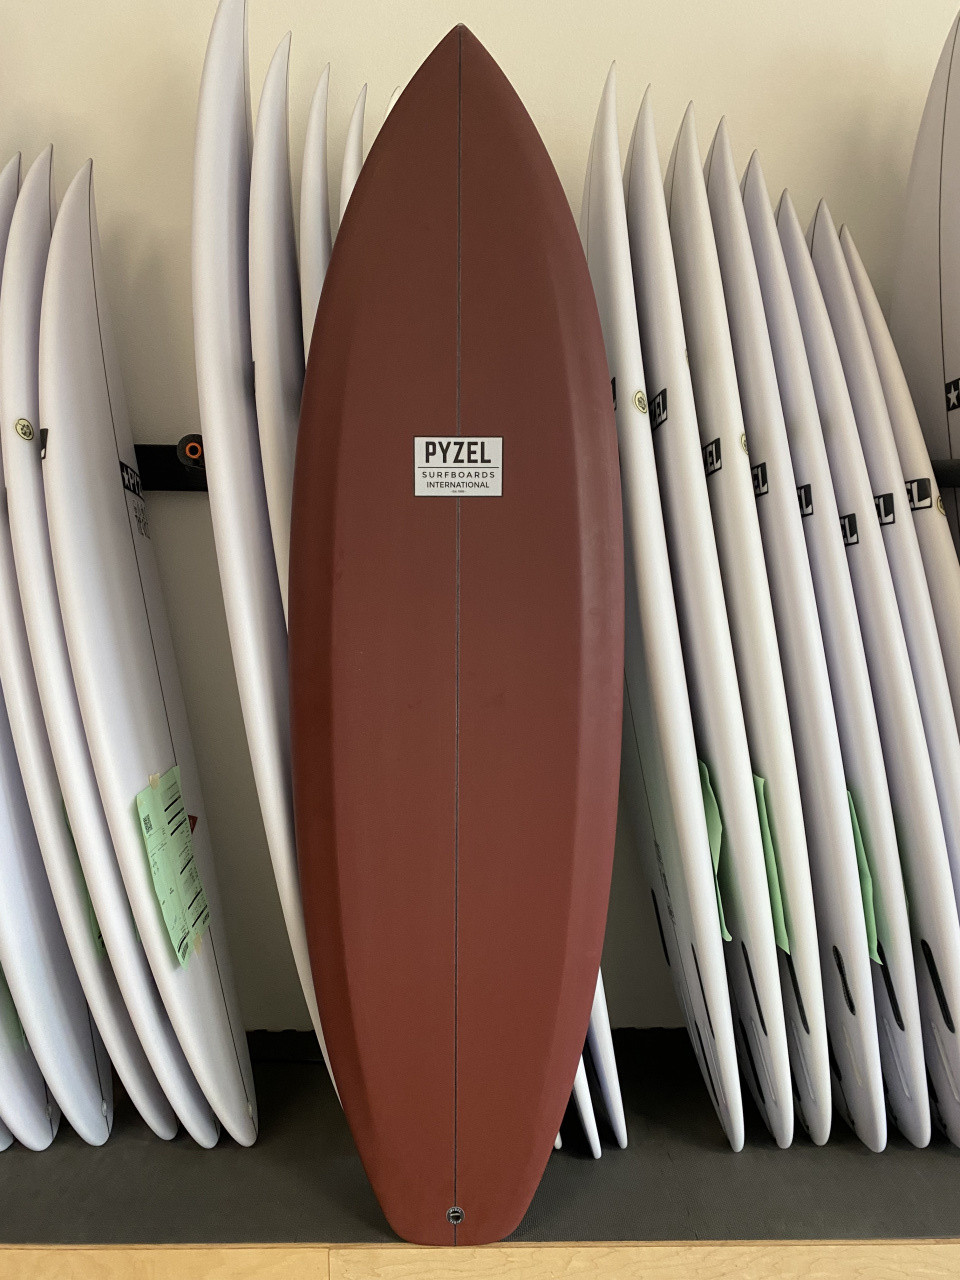 Pyzel Surfboards - Precious